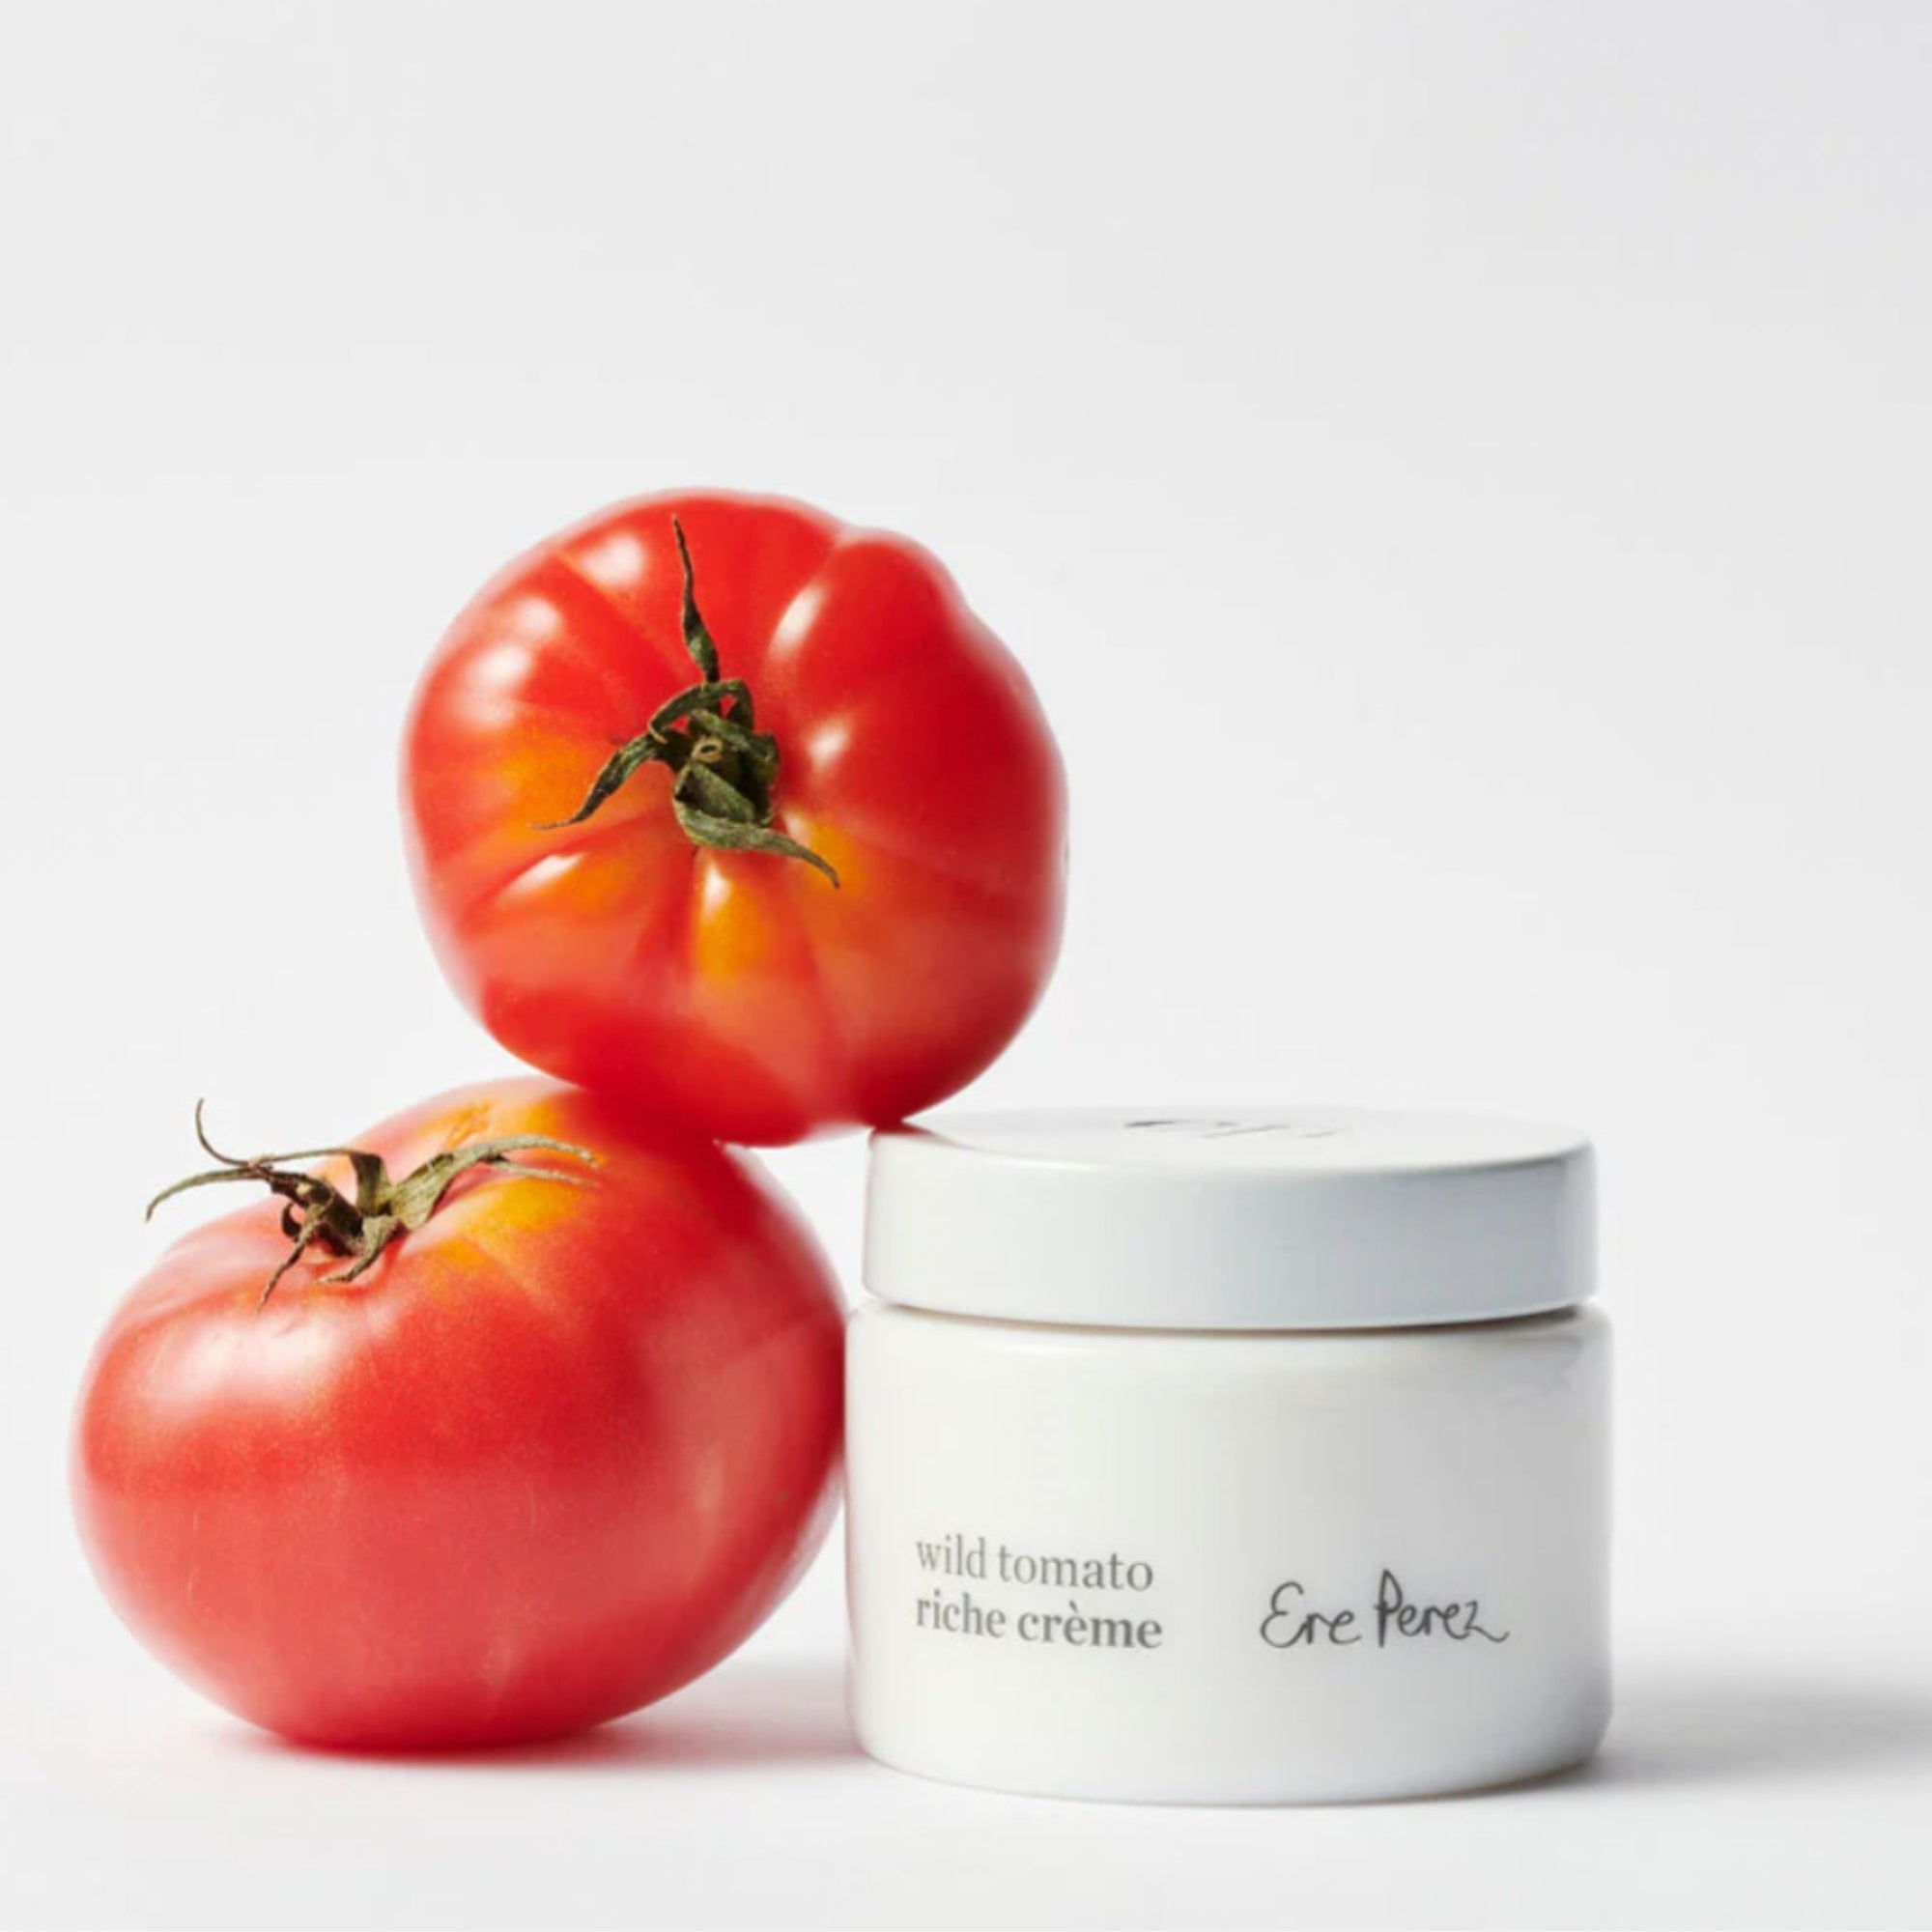 Ere Perez - Ere Perez Wild Tomato Riche Creme - ORESTA clean beauty simplified